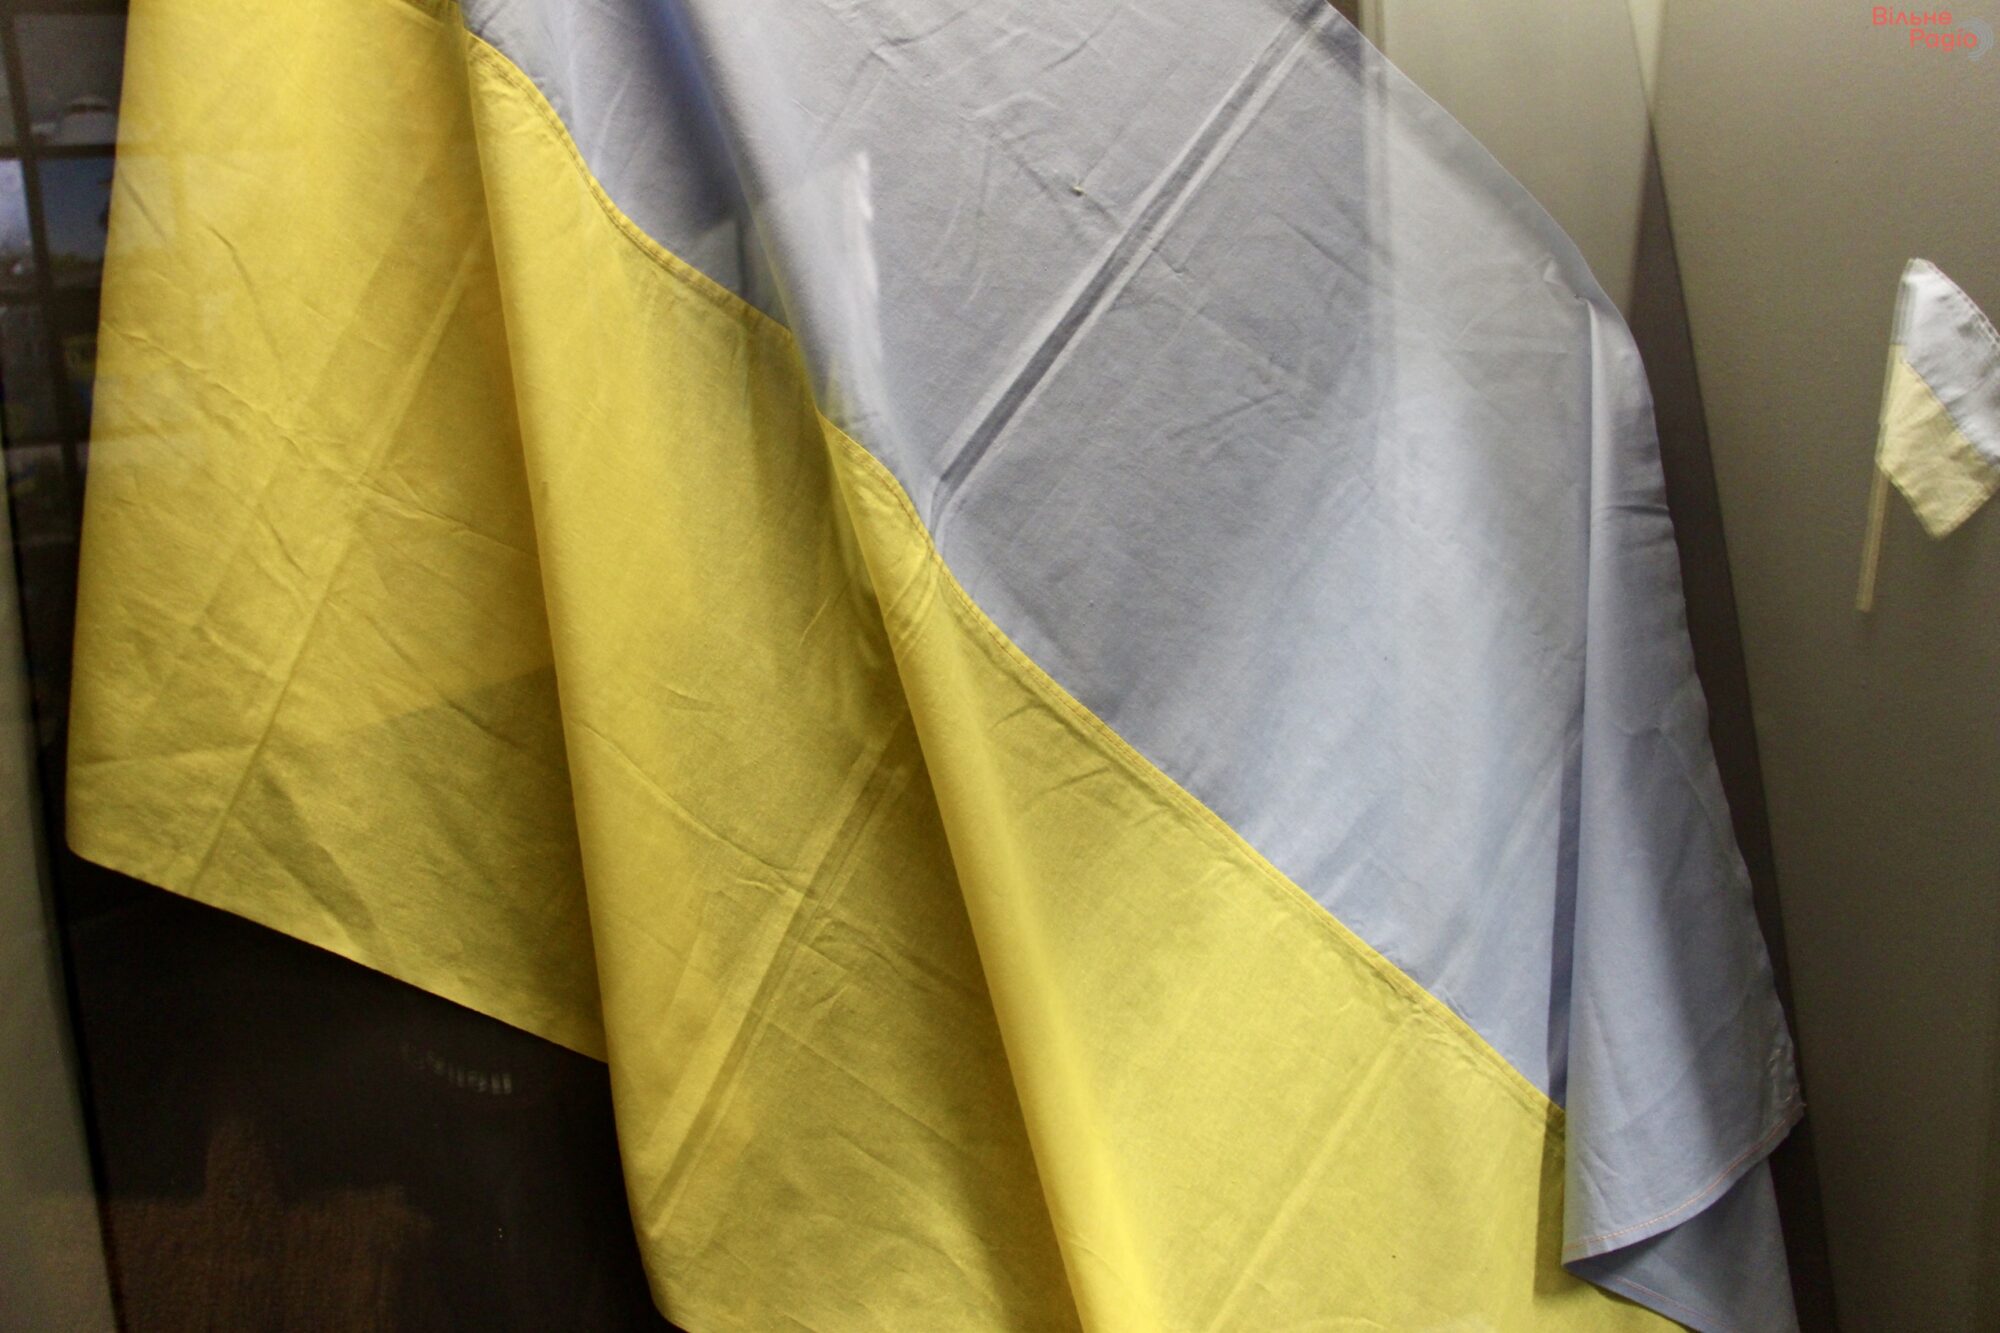 “Флаги Независимости”: фотоподборка государственных флагов, которые навсегда останутся частью украинской истории 2